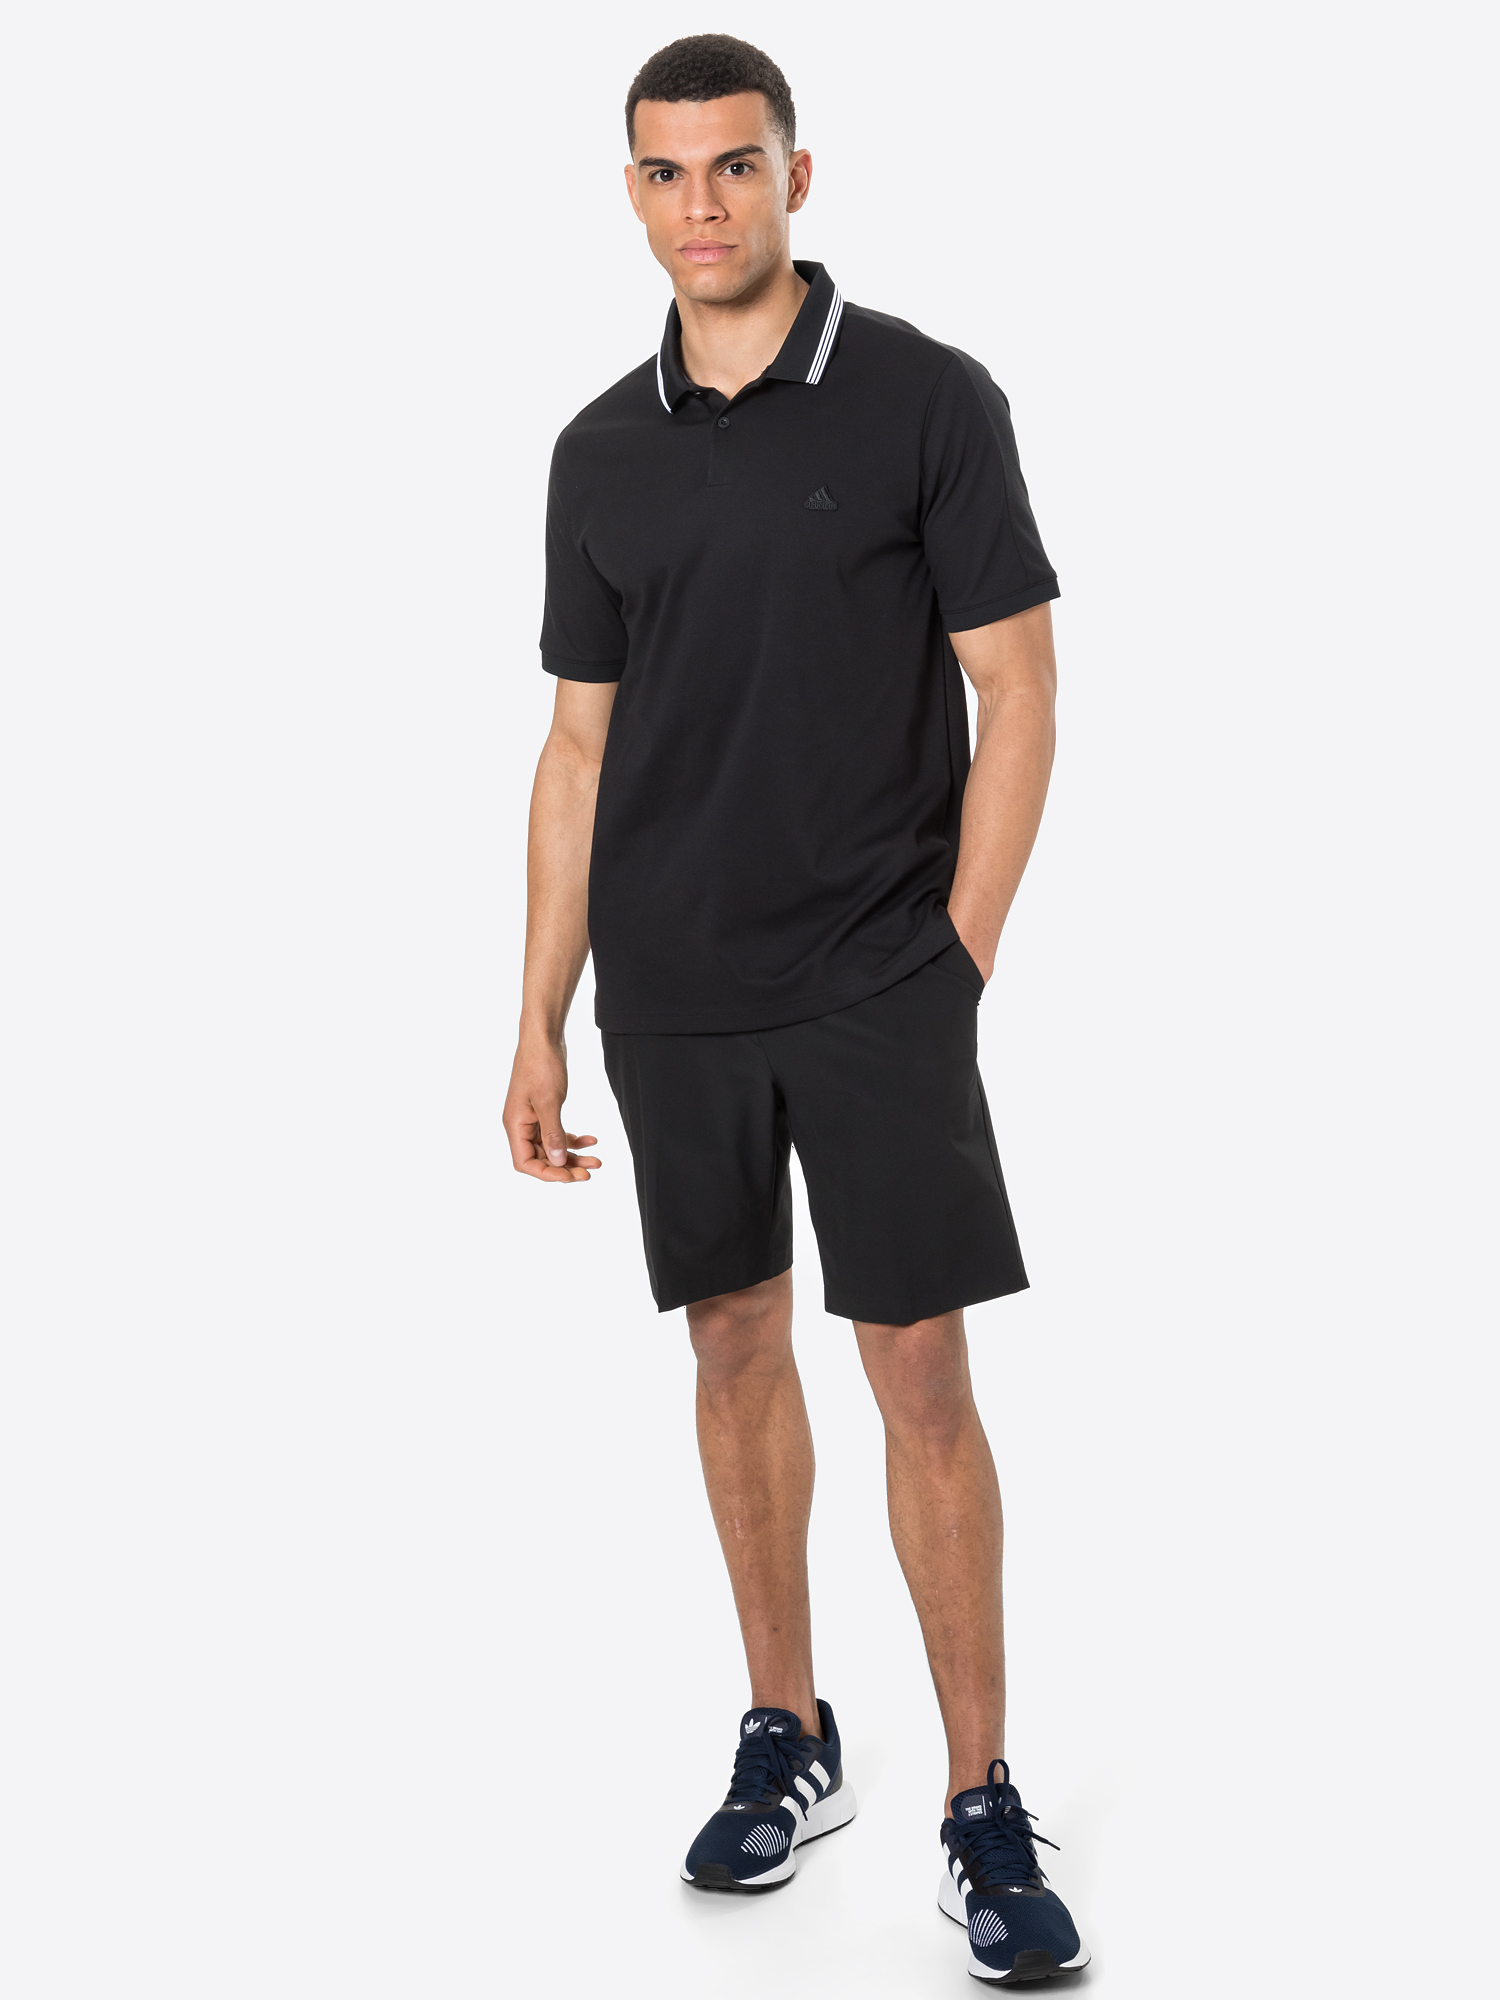 Sport cyAcM adidas Golf Koszulka funkcyjna GO-TO w kolorze Czarnym 